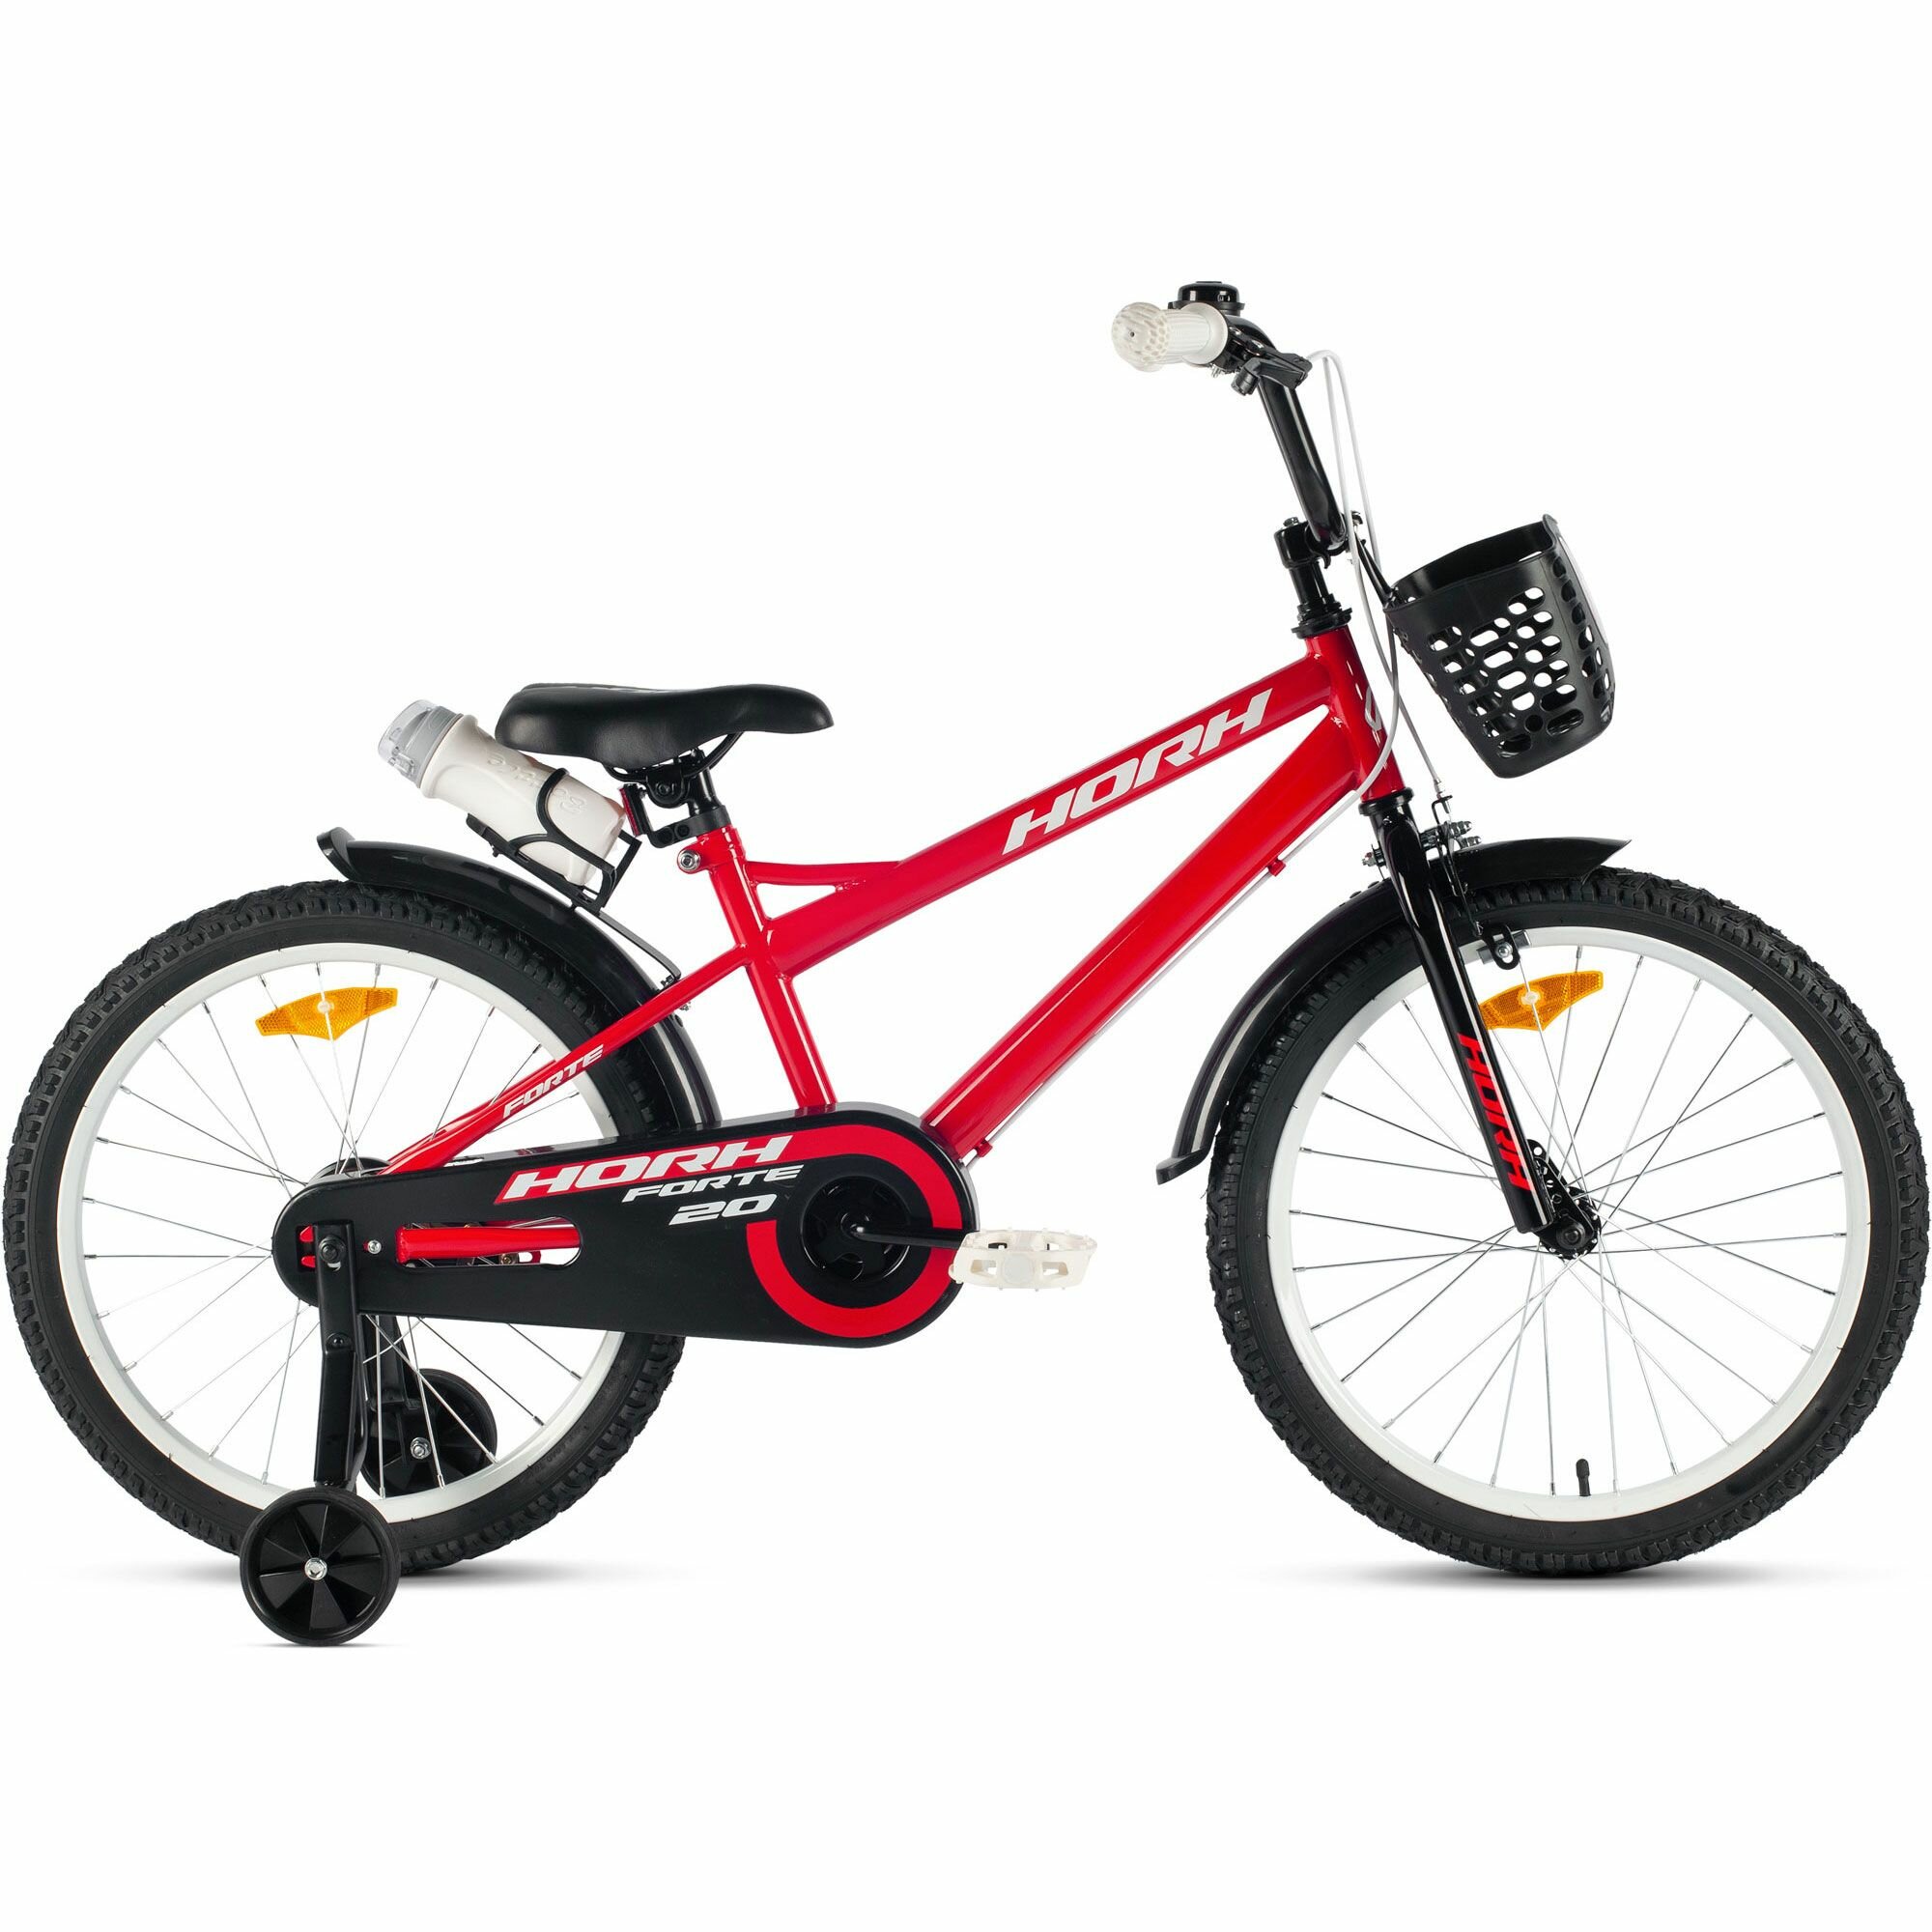 Велосипед детский городской HORH FORTE 20 2024 для детей от 6 лет до 8 лет стальная рама, с защитой цепи, звонком, флягой, корзиной, 1 ск, ободной и барабанный тормоза, красный цвет рост 120-135